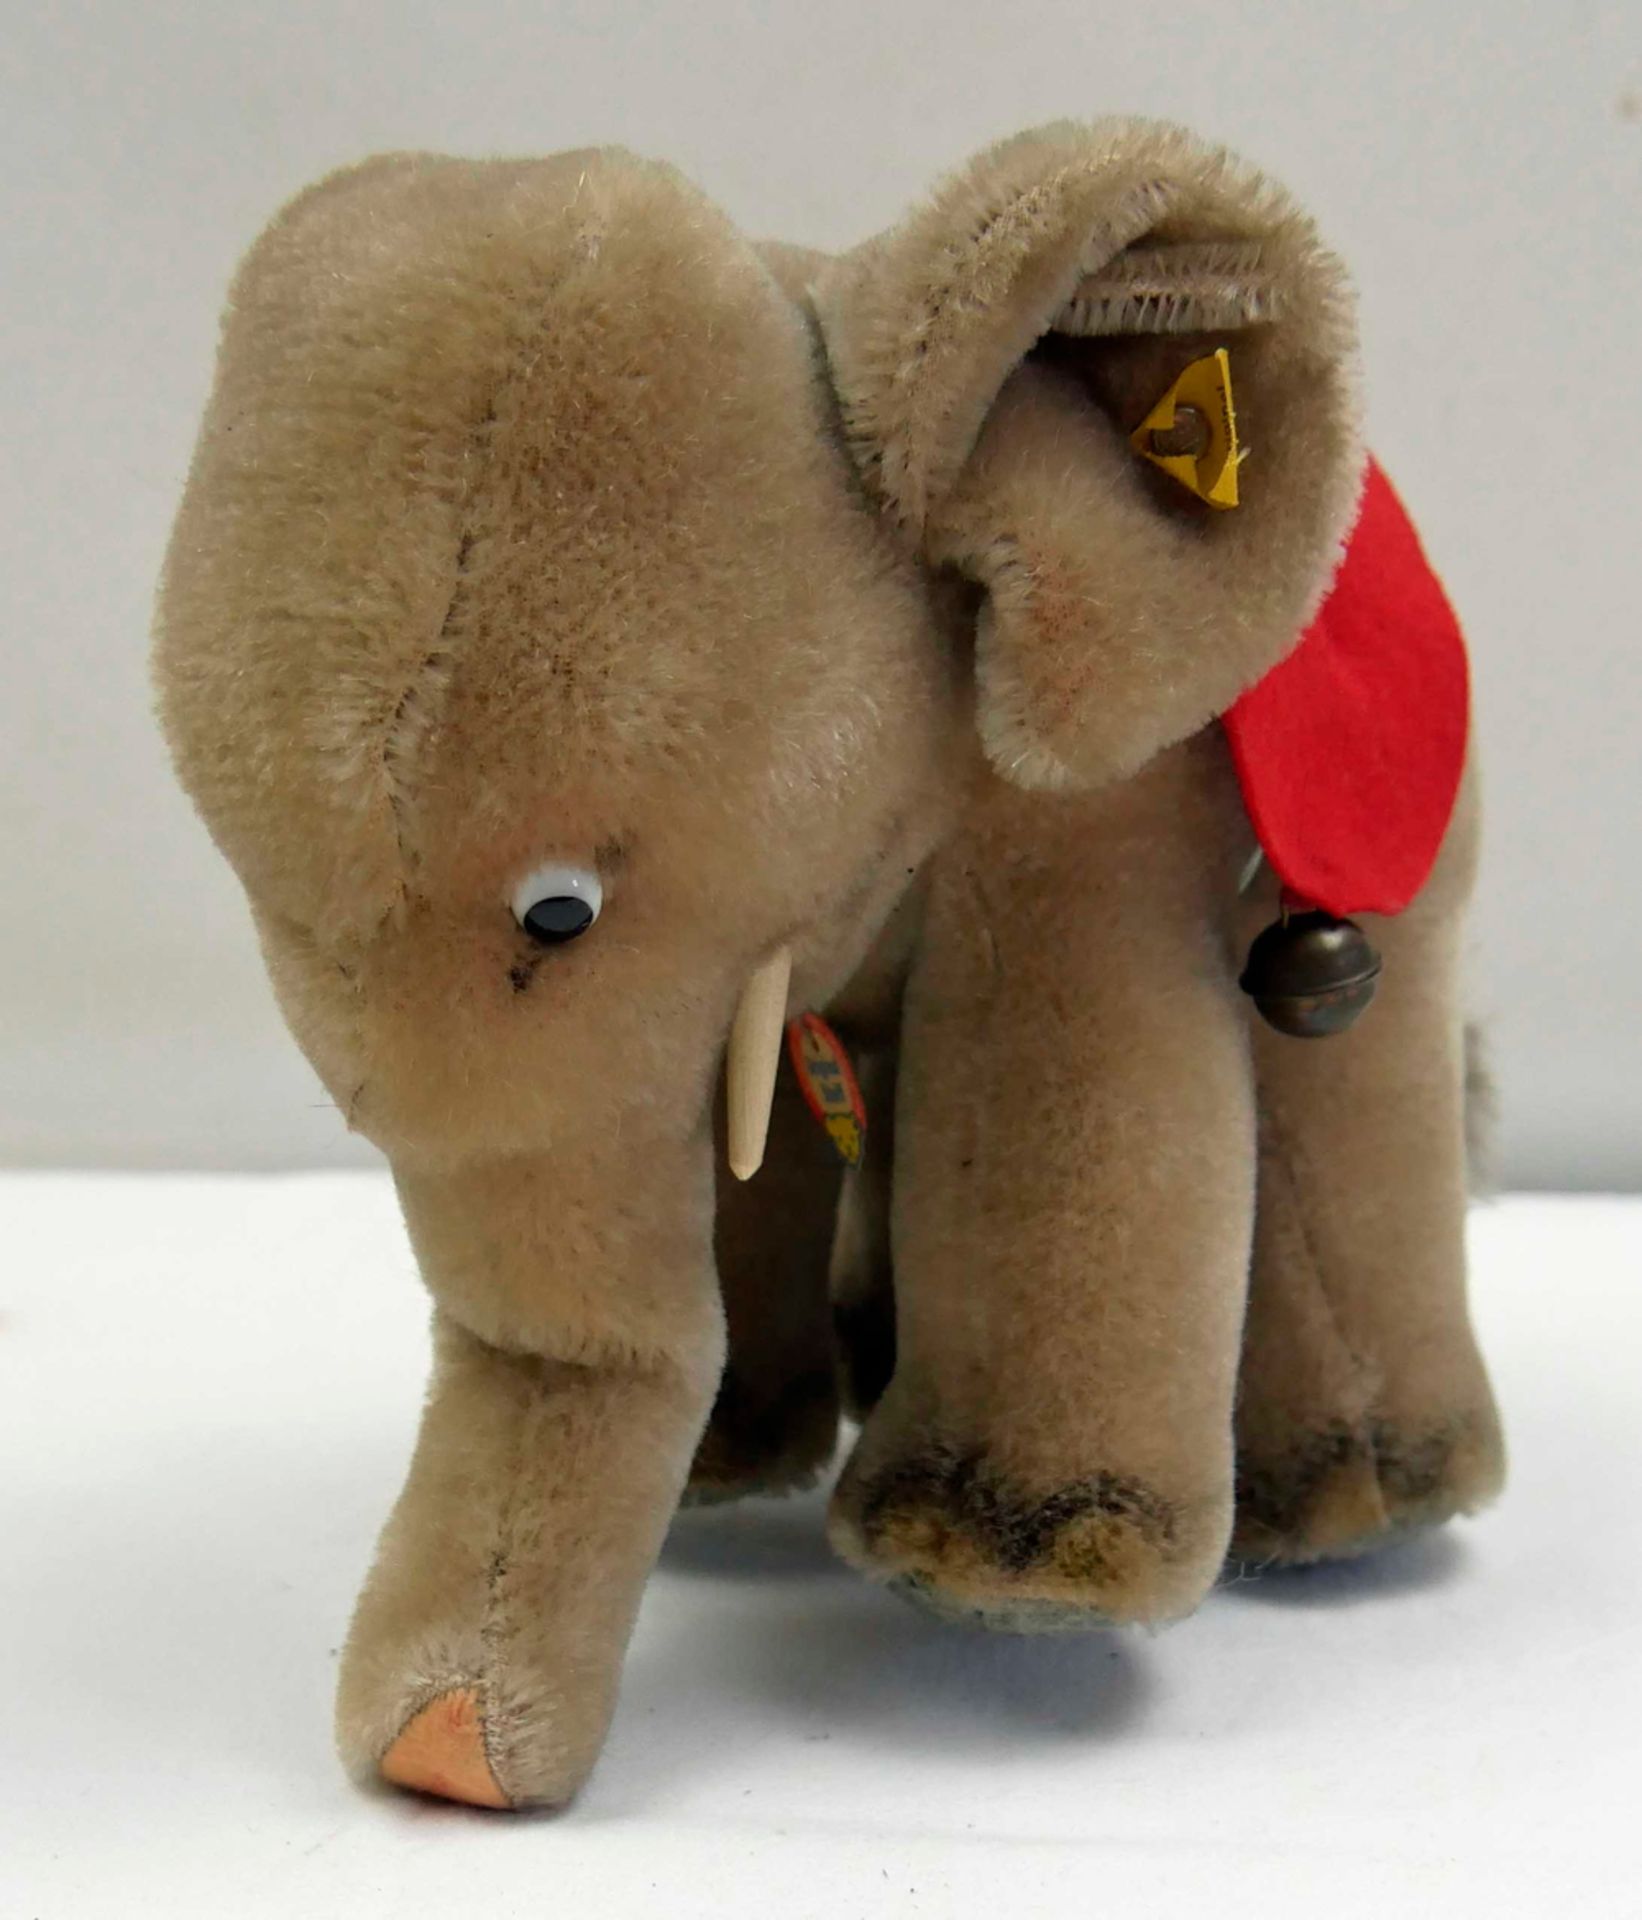 Steiff Elefant, mit silbernen Knopf, Fahne und Schild, Fahne nicht vollständig. Ca. 60er Jahre, 17